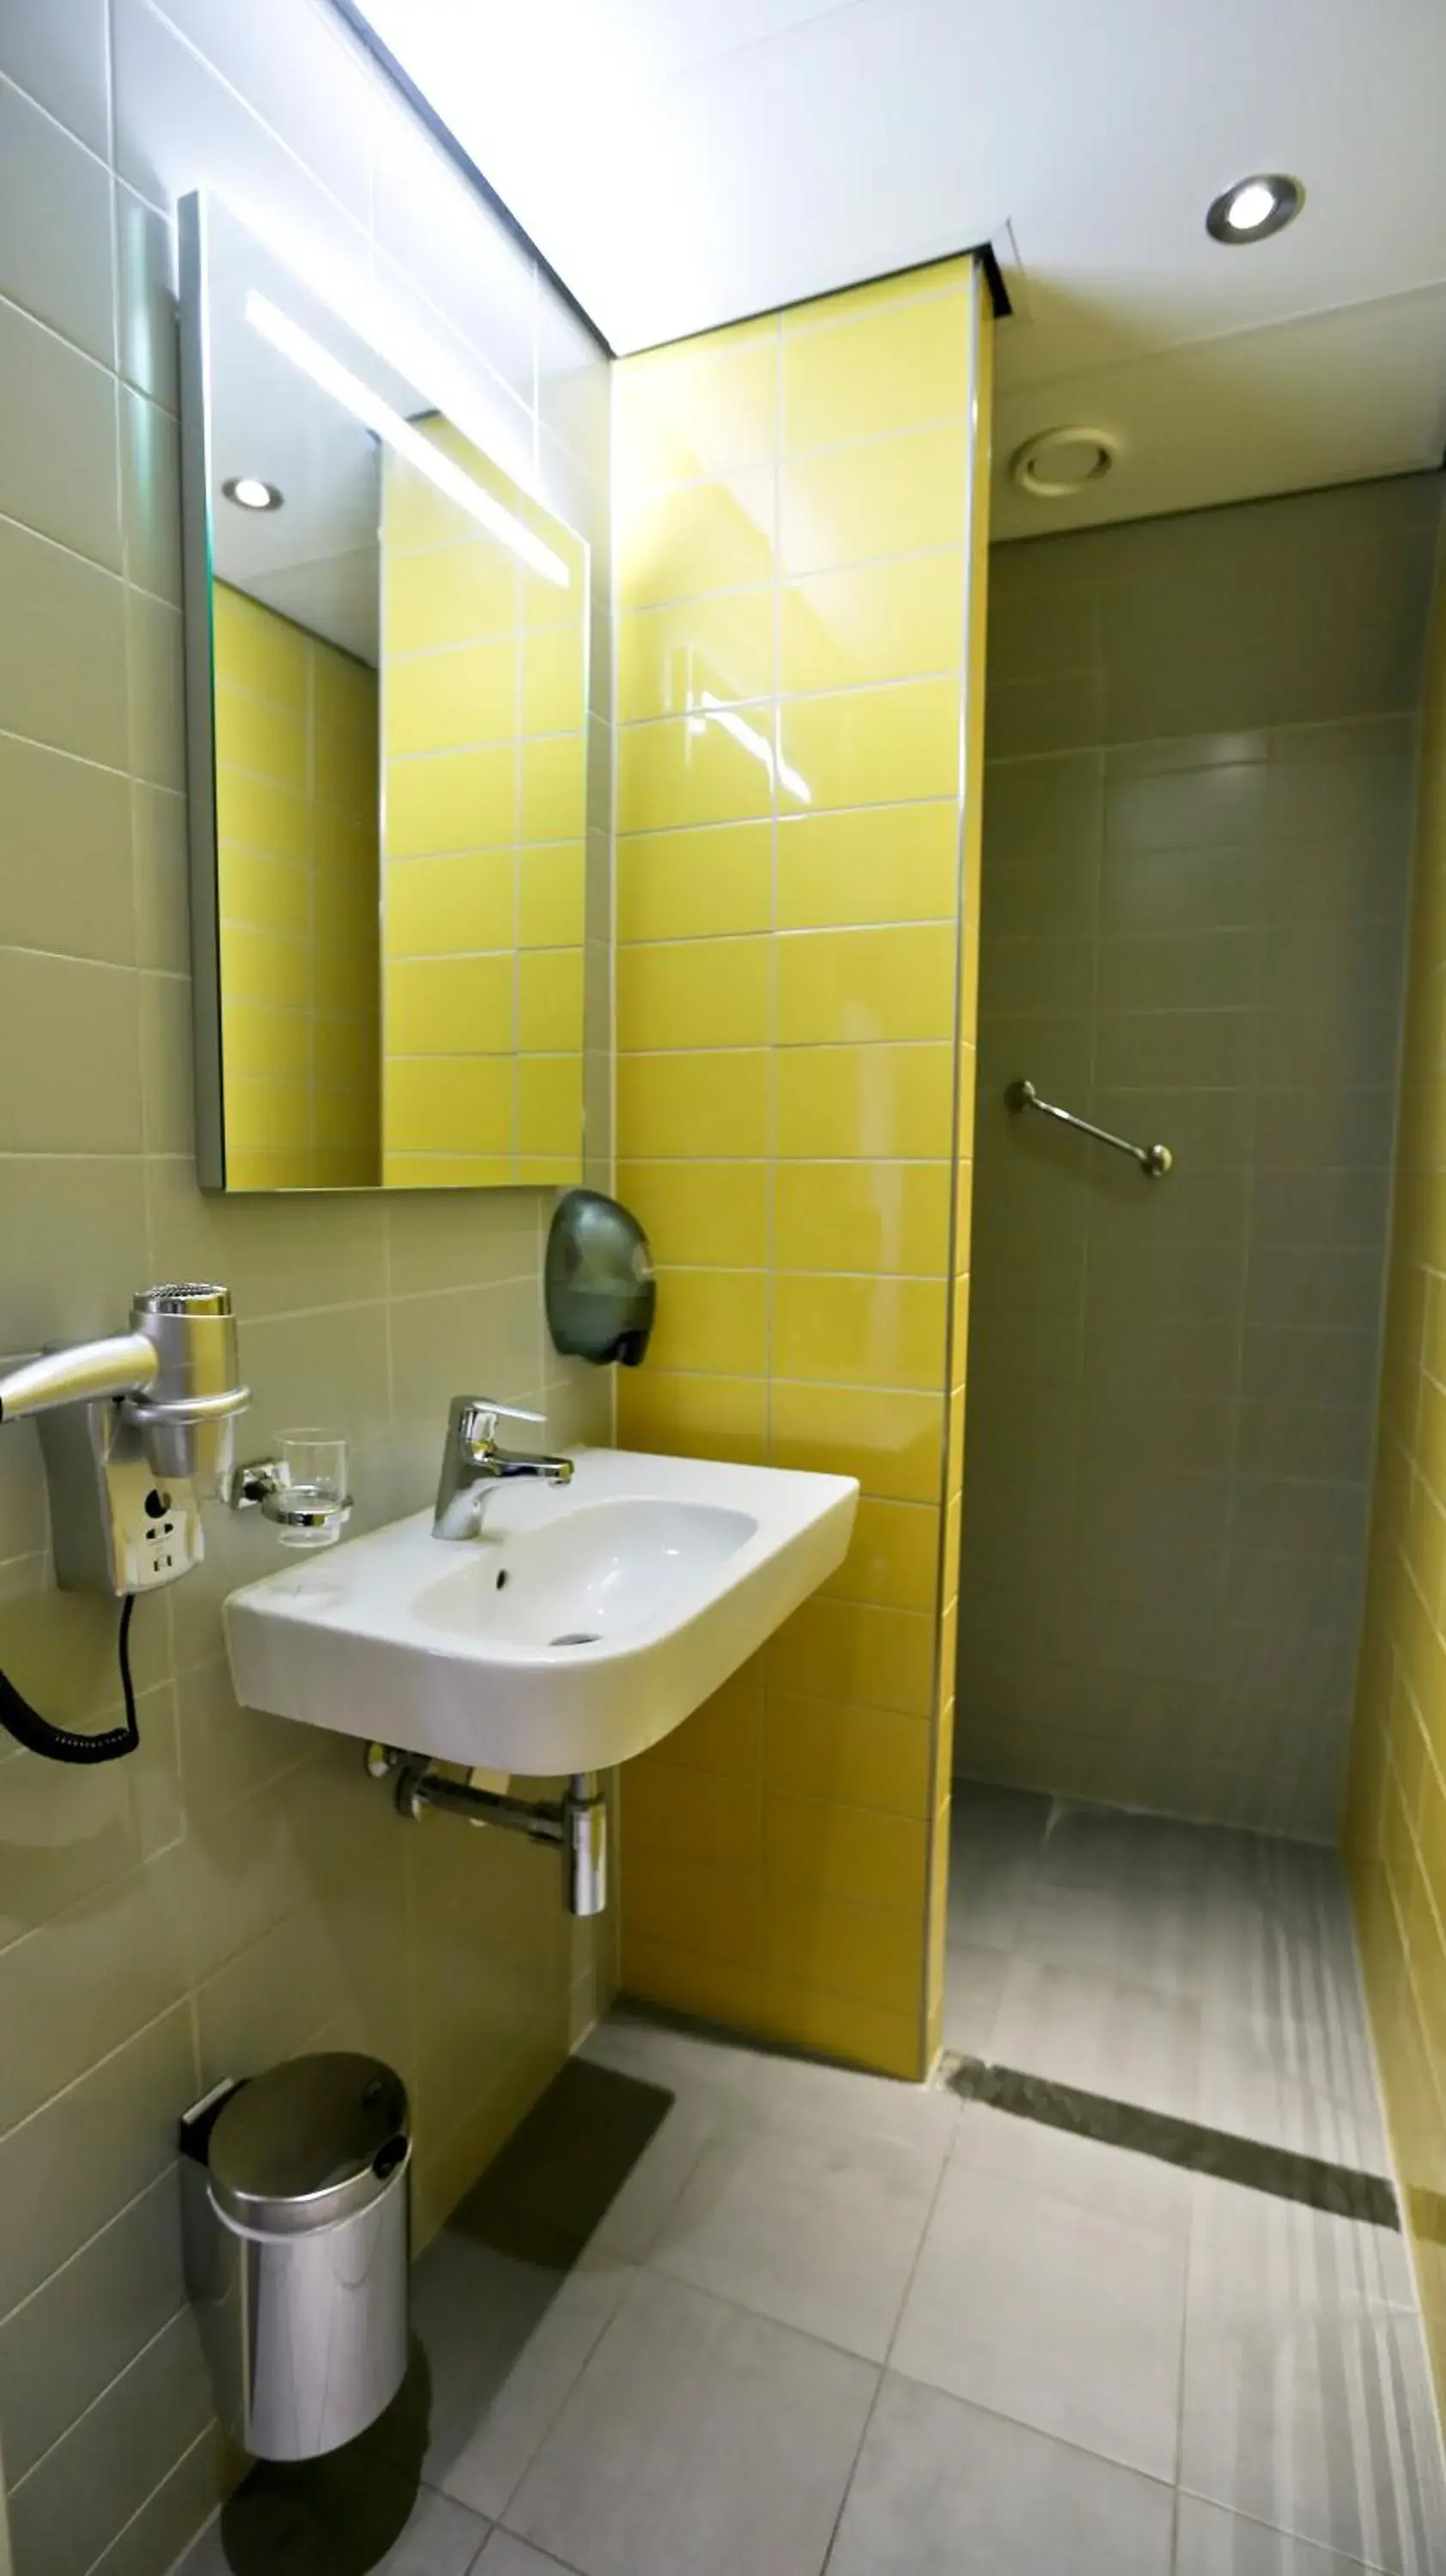 Bathroom in City Hotel Amsterdam